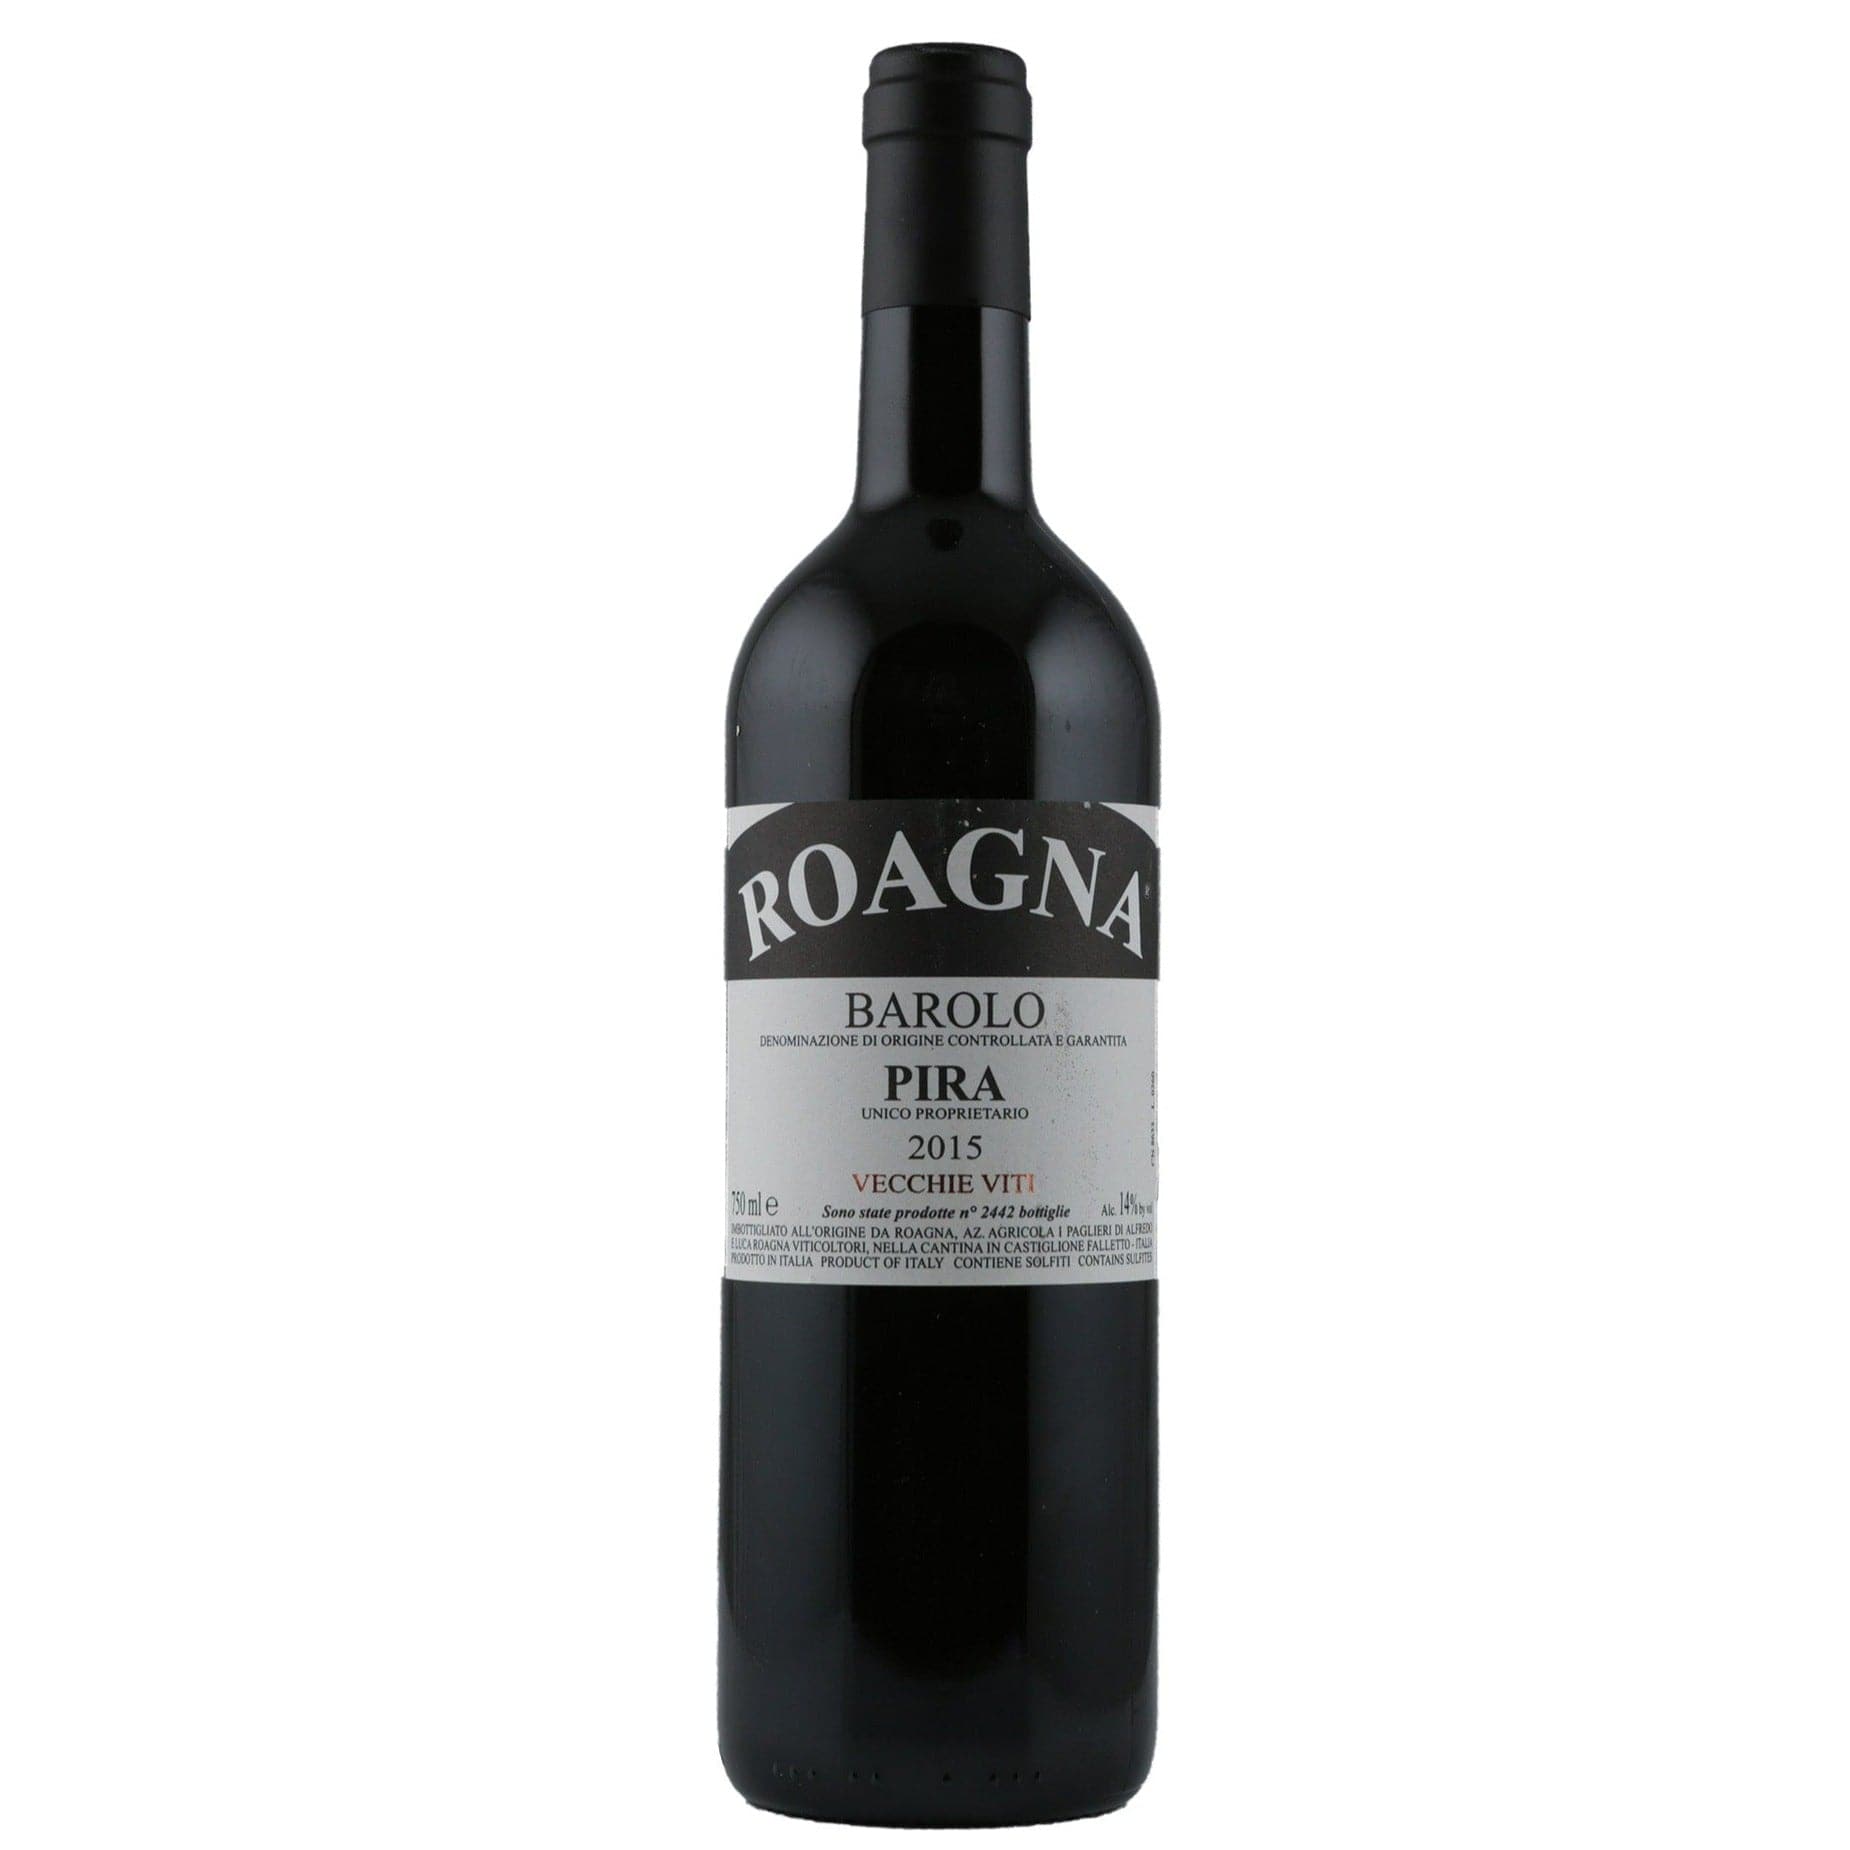 Single bottle of Red wine Roagna, Pira Vecchie Viti, Barolo, 2015 100% Nebbiolo